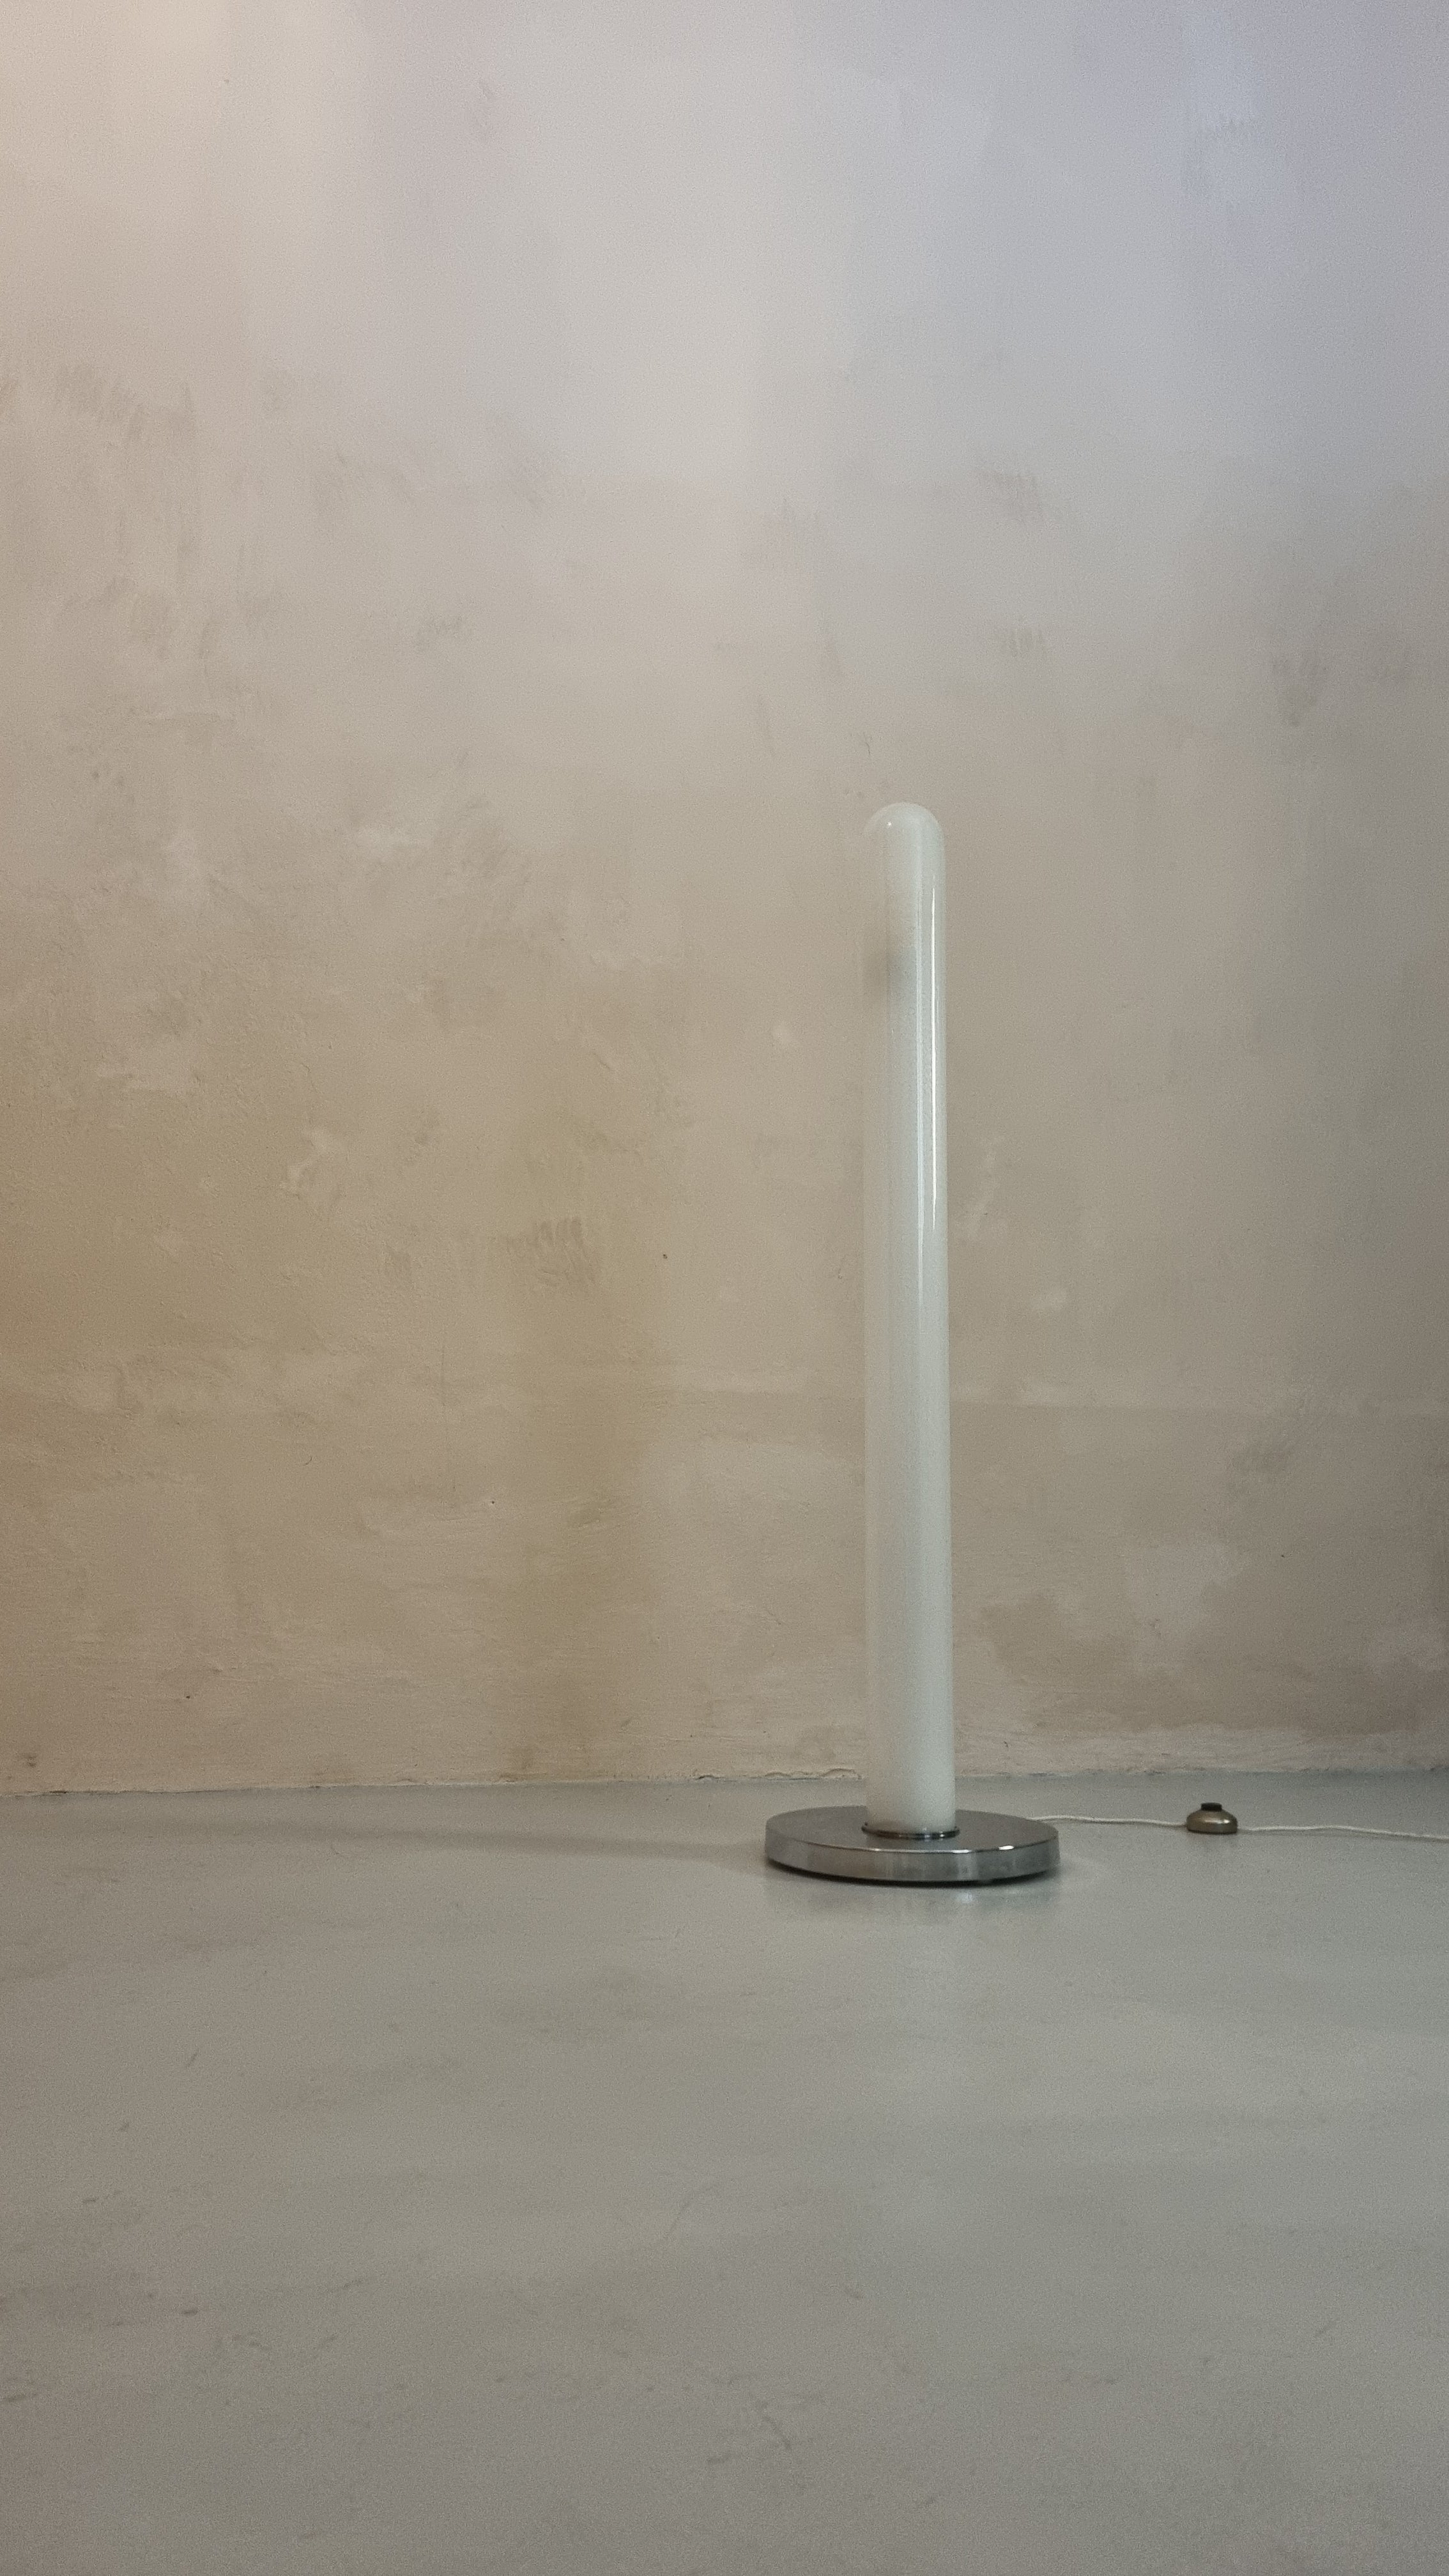 Lampe à terre produite par Lumenform en 1970, structure en ottone cromato et vetro di Murano soffiato, la particularité de cette lampe rare réside dans le paralume de forme arrotondata et allungata, perfetta per ambienti rilassanti , attribuita ad